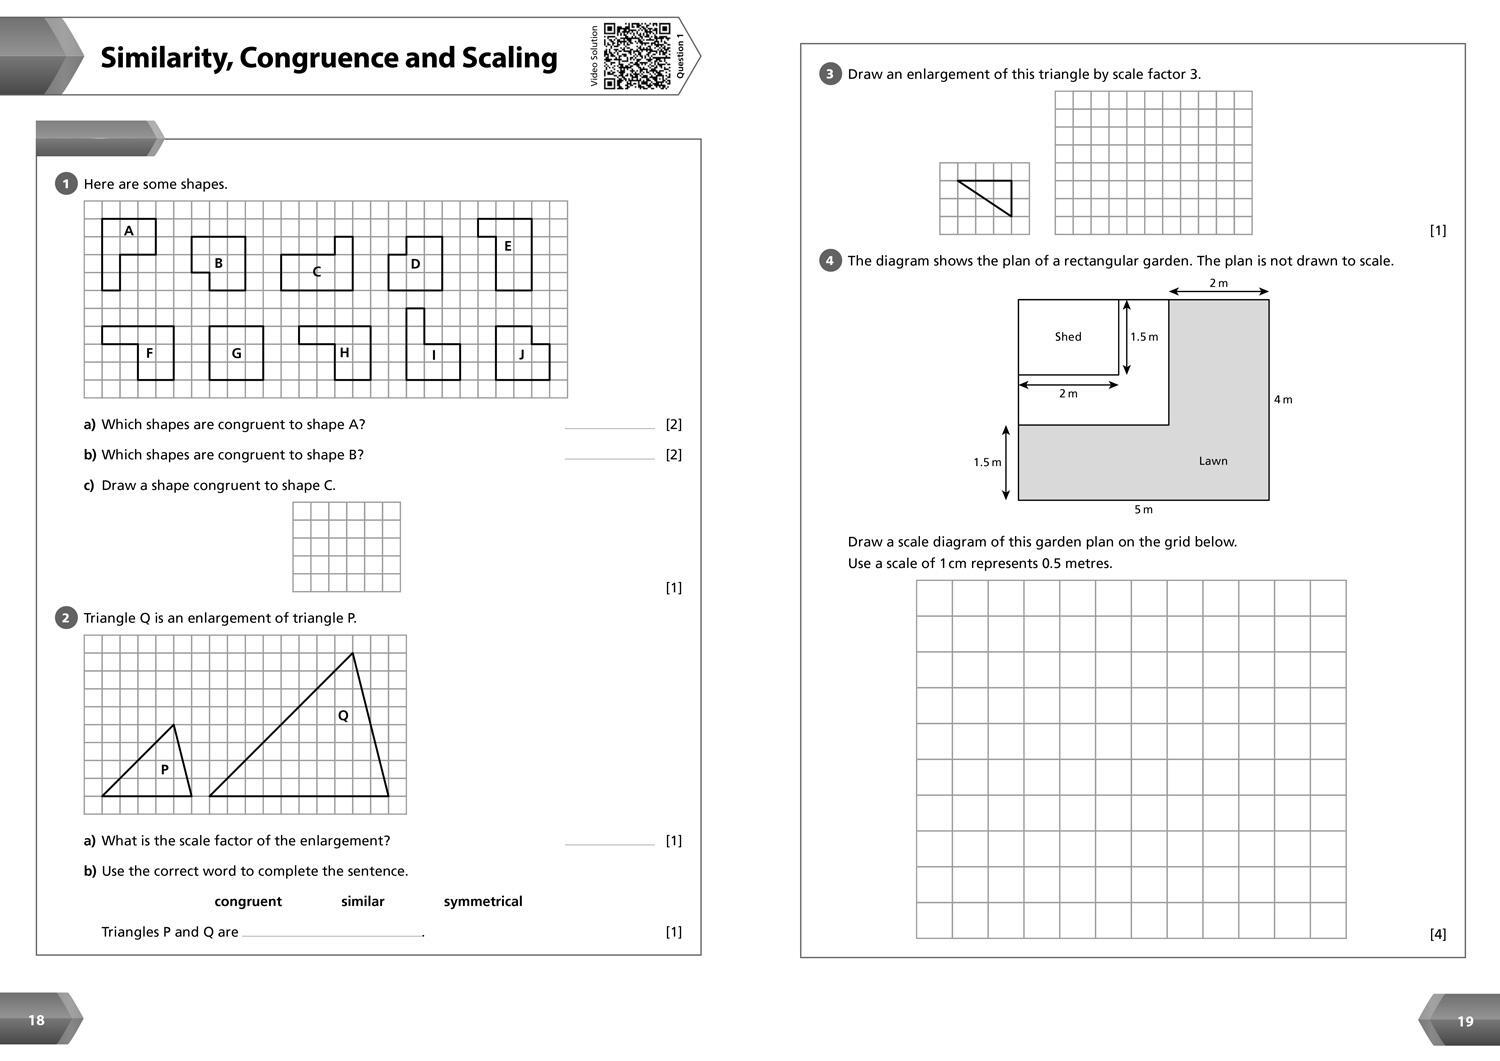 Bild: 9780008553715 | KS3 Maths Year 9 Workbook | Ideal for Year 9 | Collins KS3 | Buch